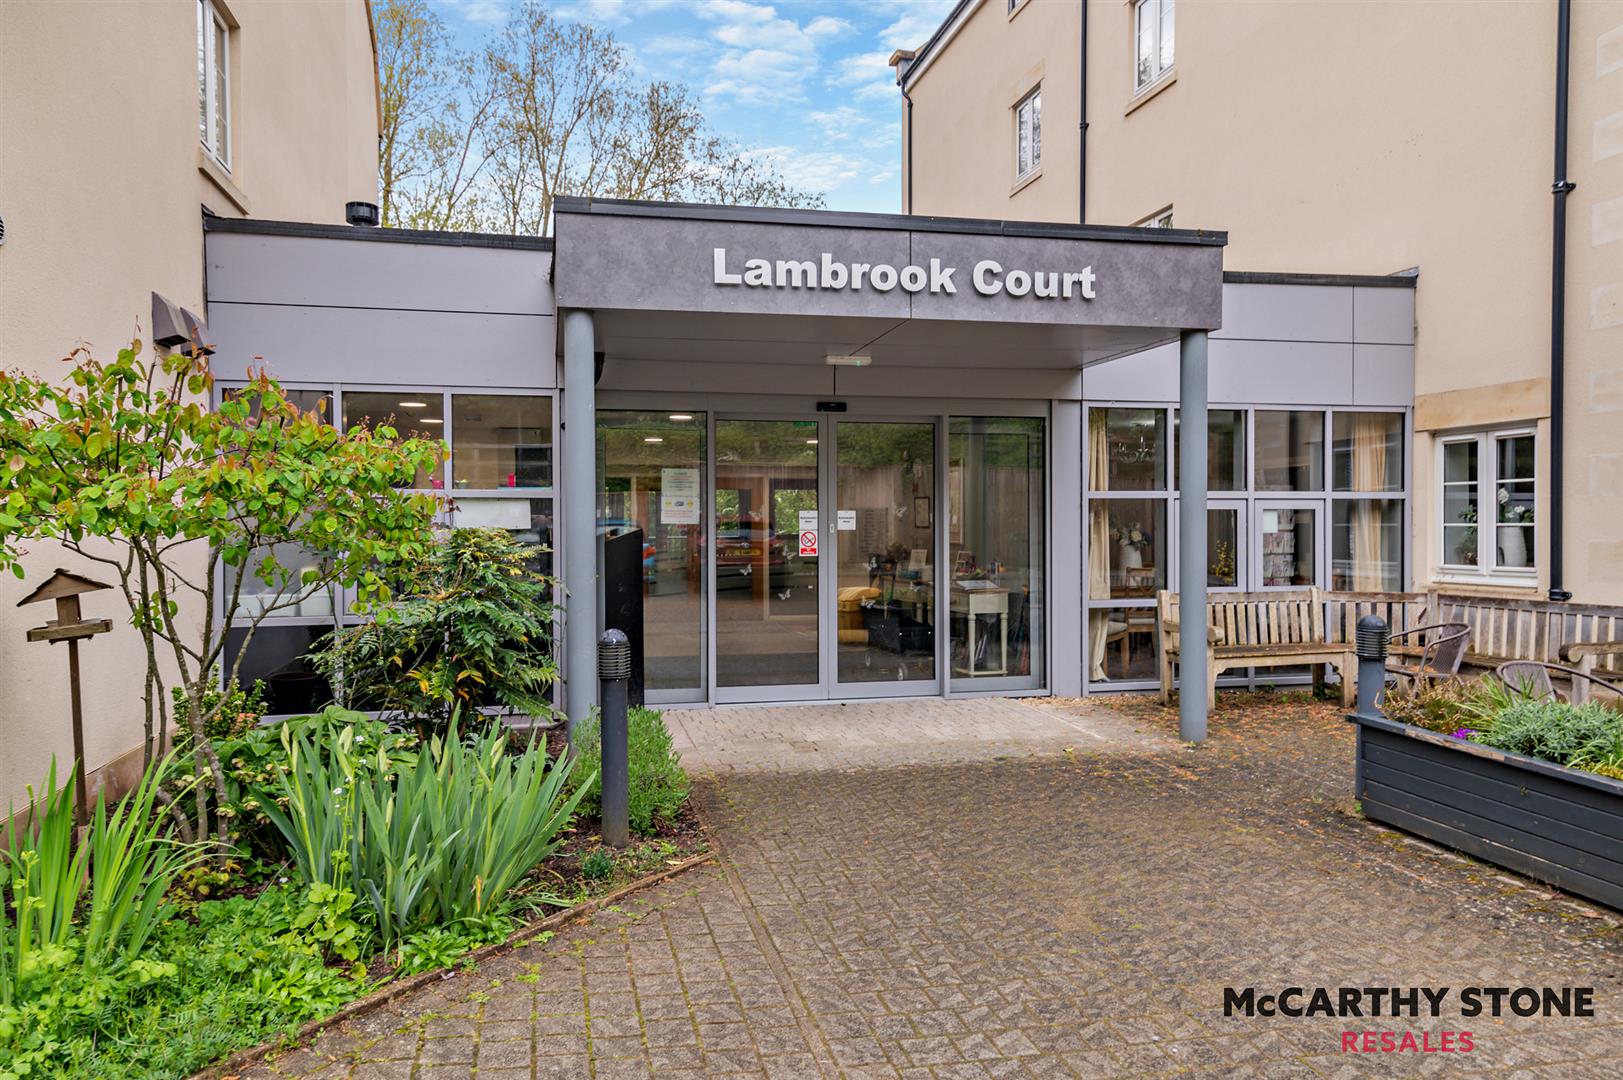 Lambrook Court, Gloucester Road, Larkhall, Bath, BA1 8AZ